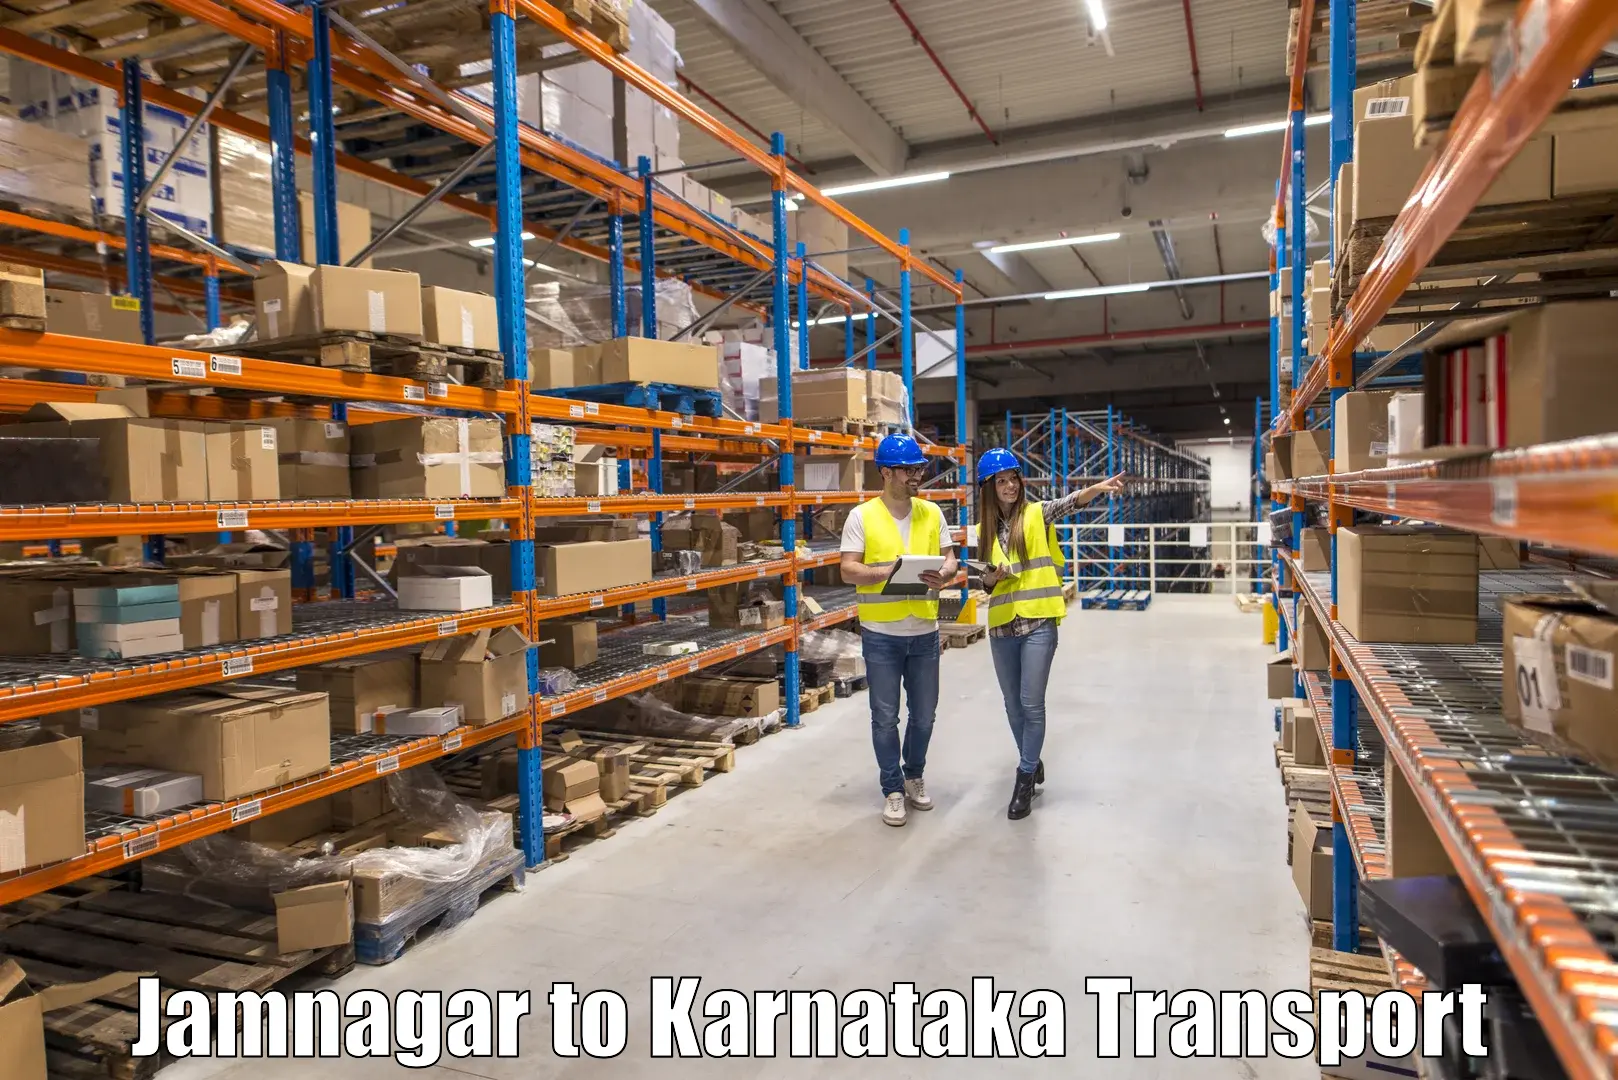 Commercial transport service in Jamnagar to Ballari